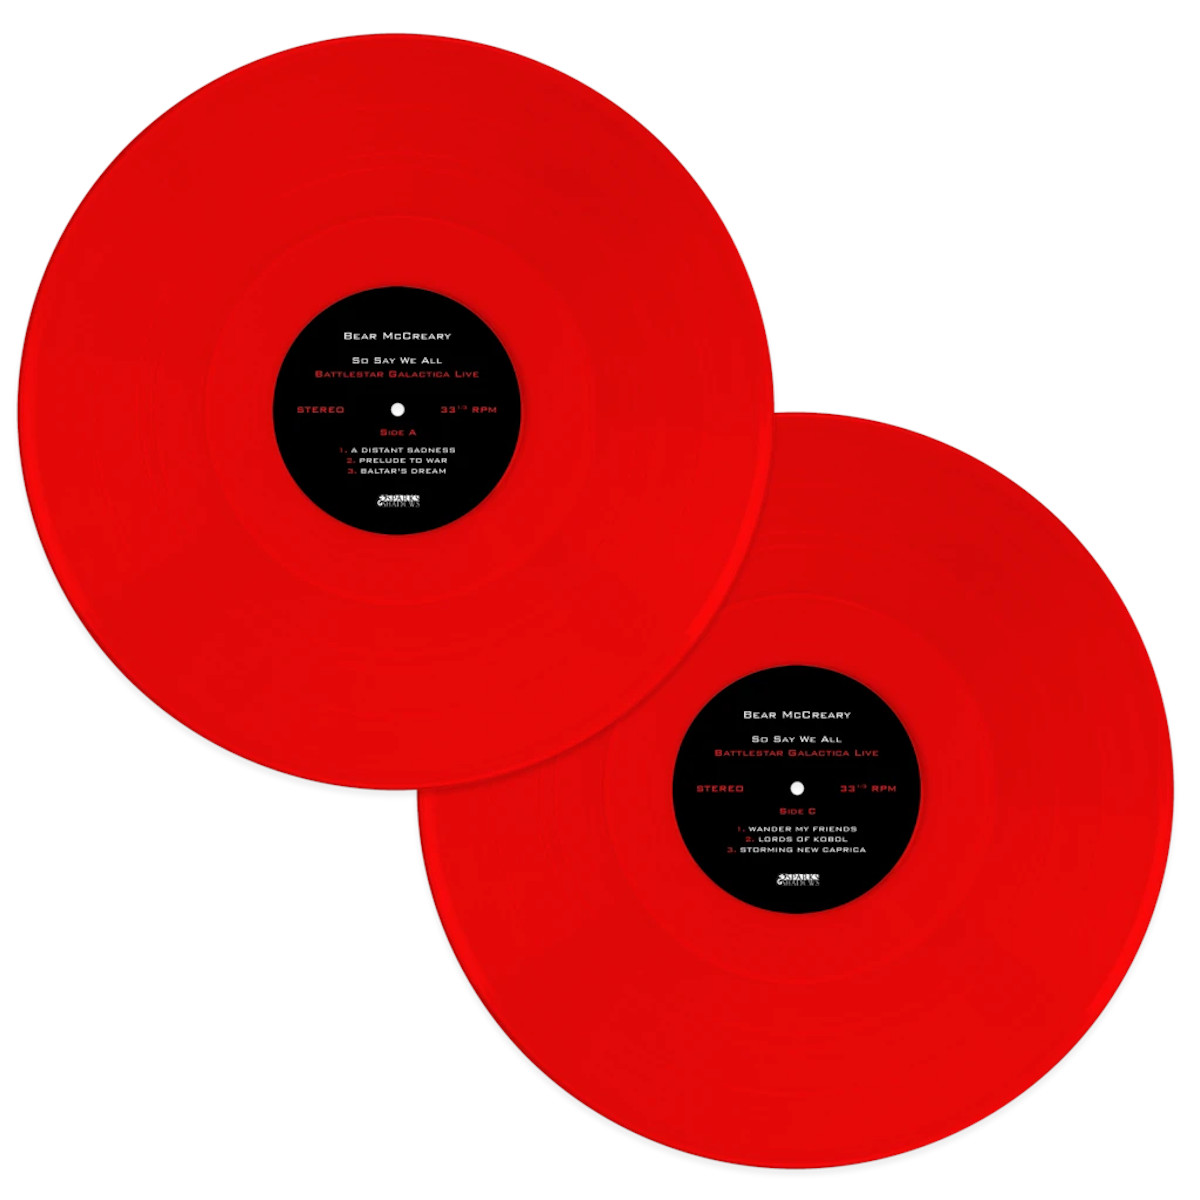 Translucent Red Vinyl